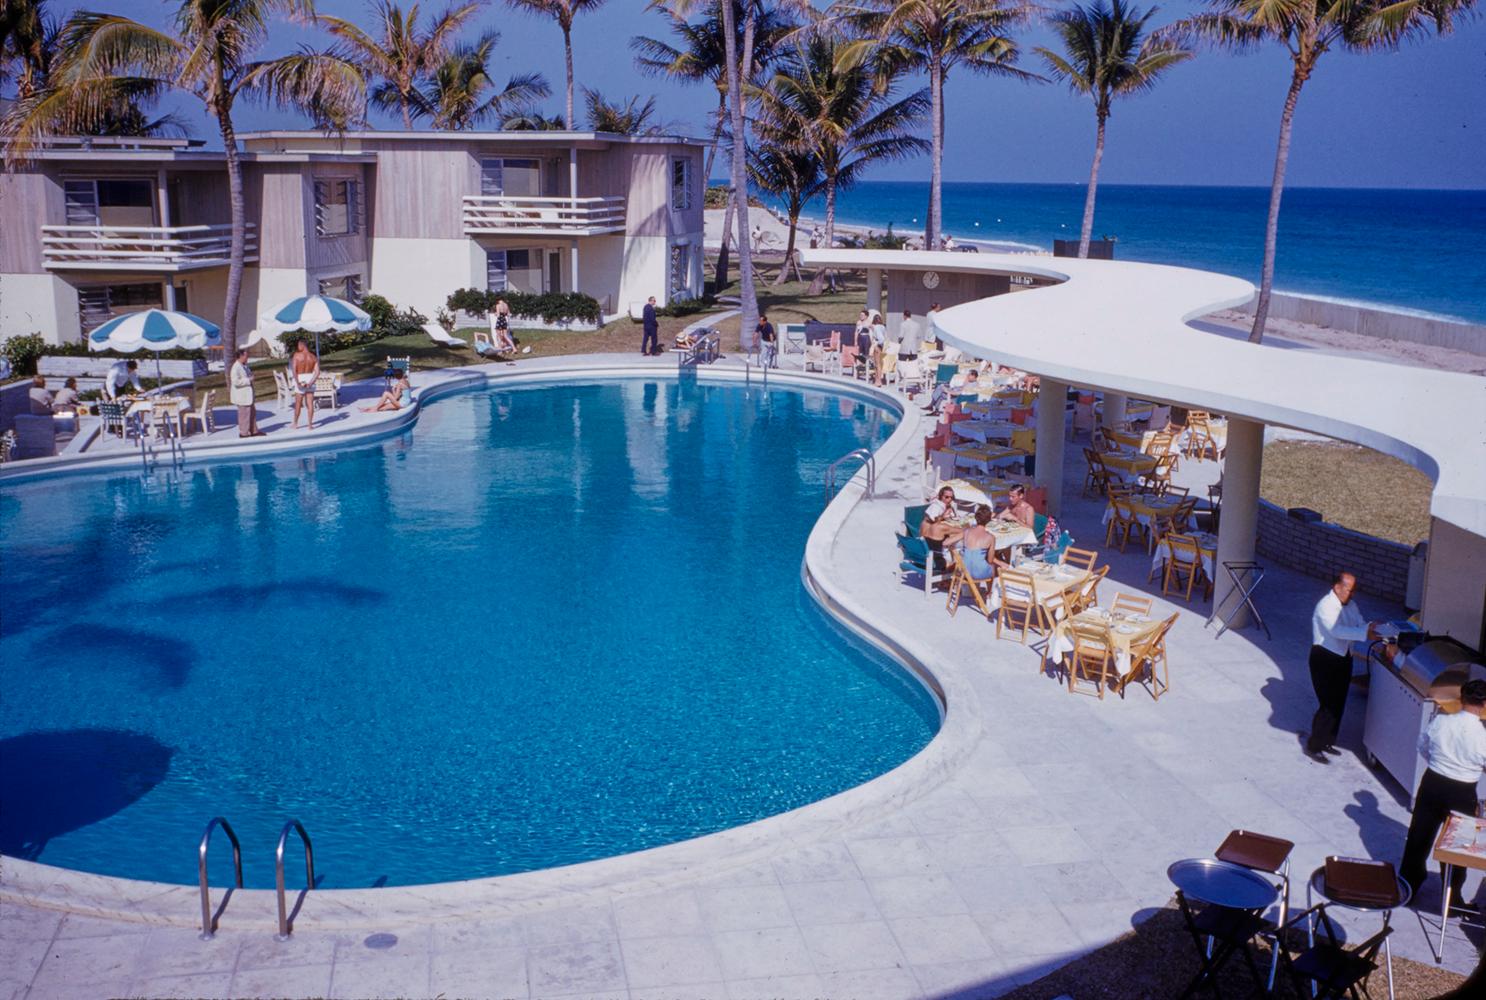 La Coquille Club, Florida 1954

Gäste am Swimmingpool des La Coquille Club, Florida im Dezember 1954

von Toni Frissell

40 x 30" Zoll / 101 x 76 cm Papierformat 
Archivierungs-Pigmentdruck
ungerahmt 
(Einrahmung möglich - siehe Beispiele - bitte